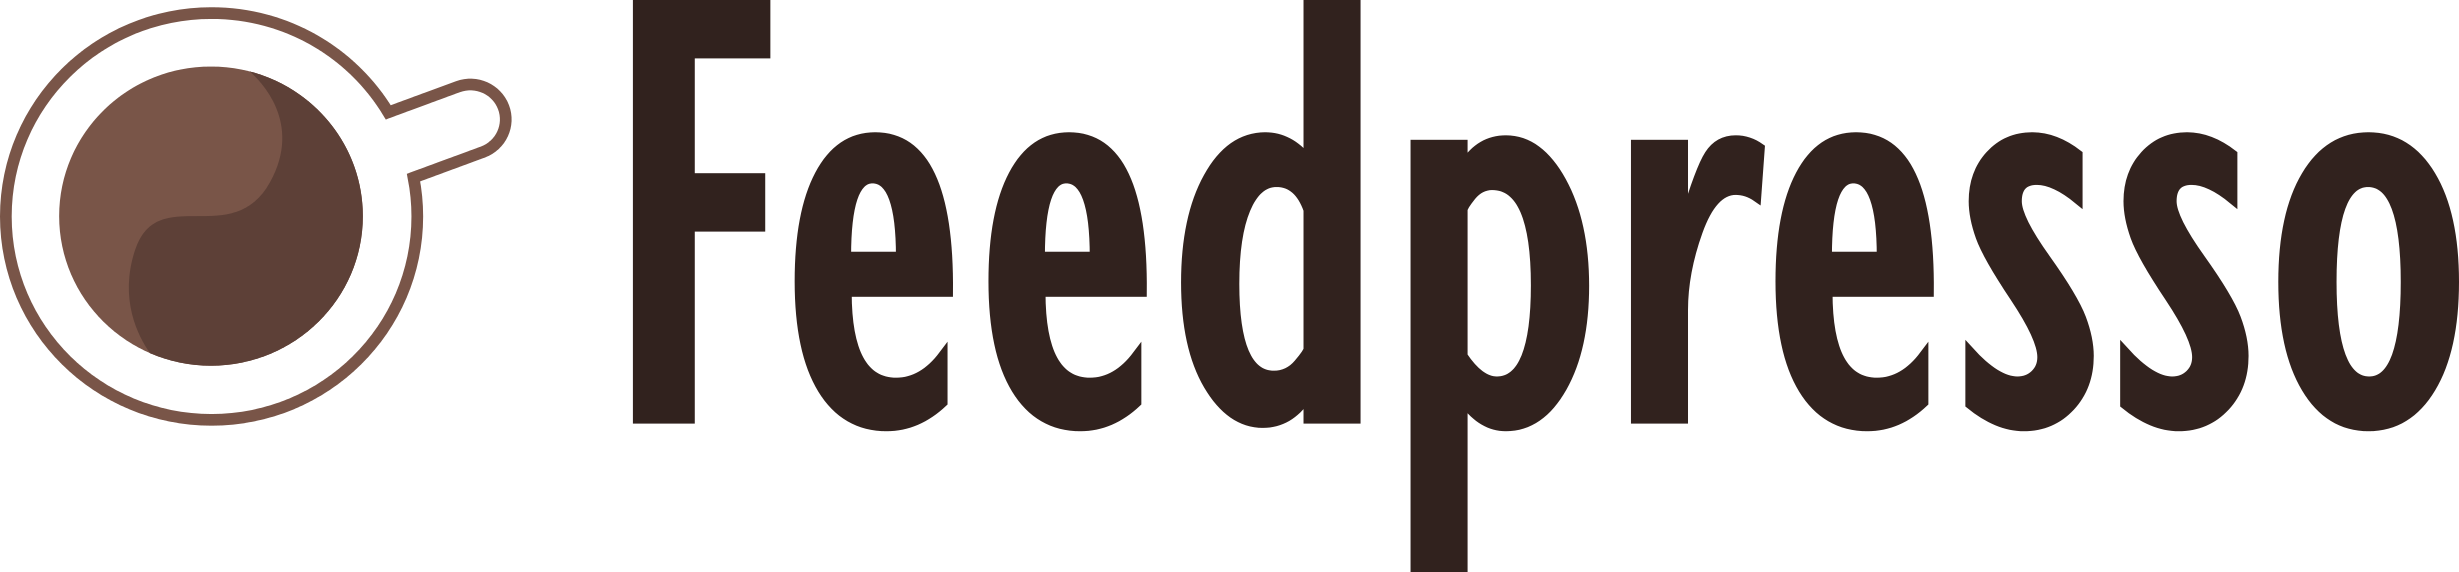 Feedpresso, Startupyard